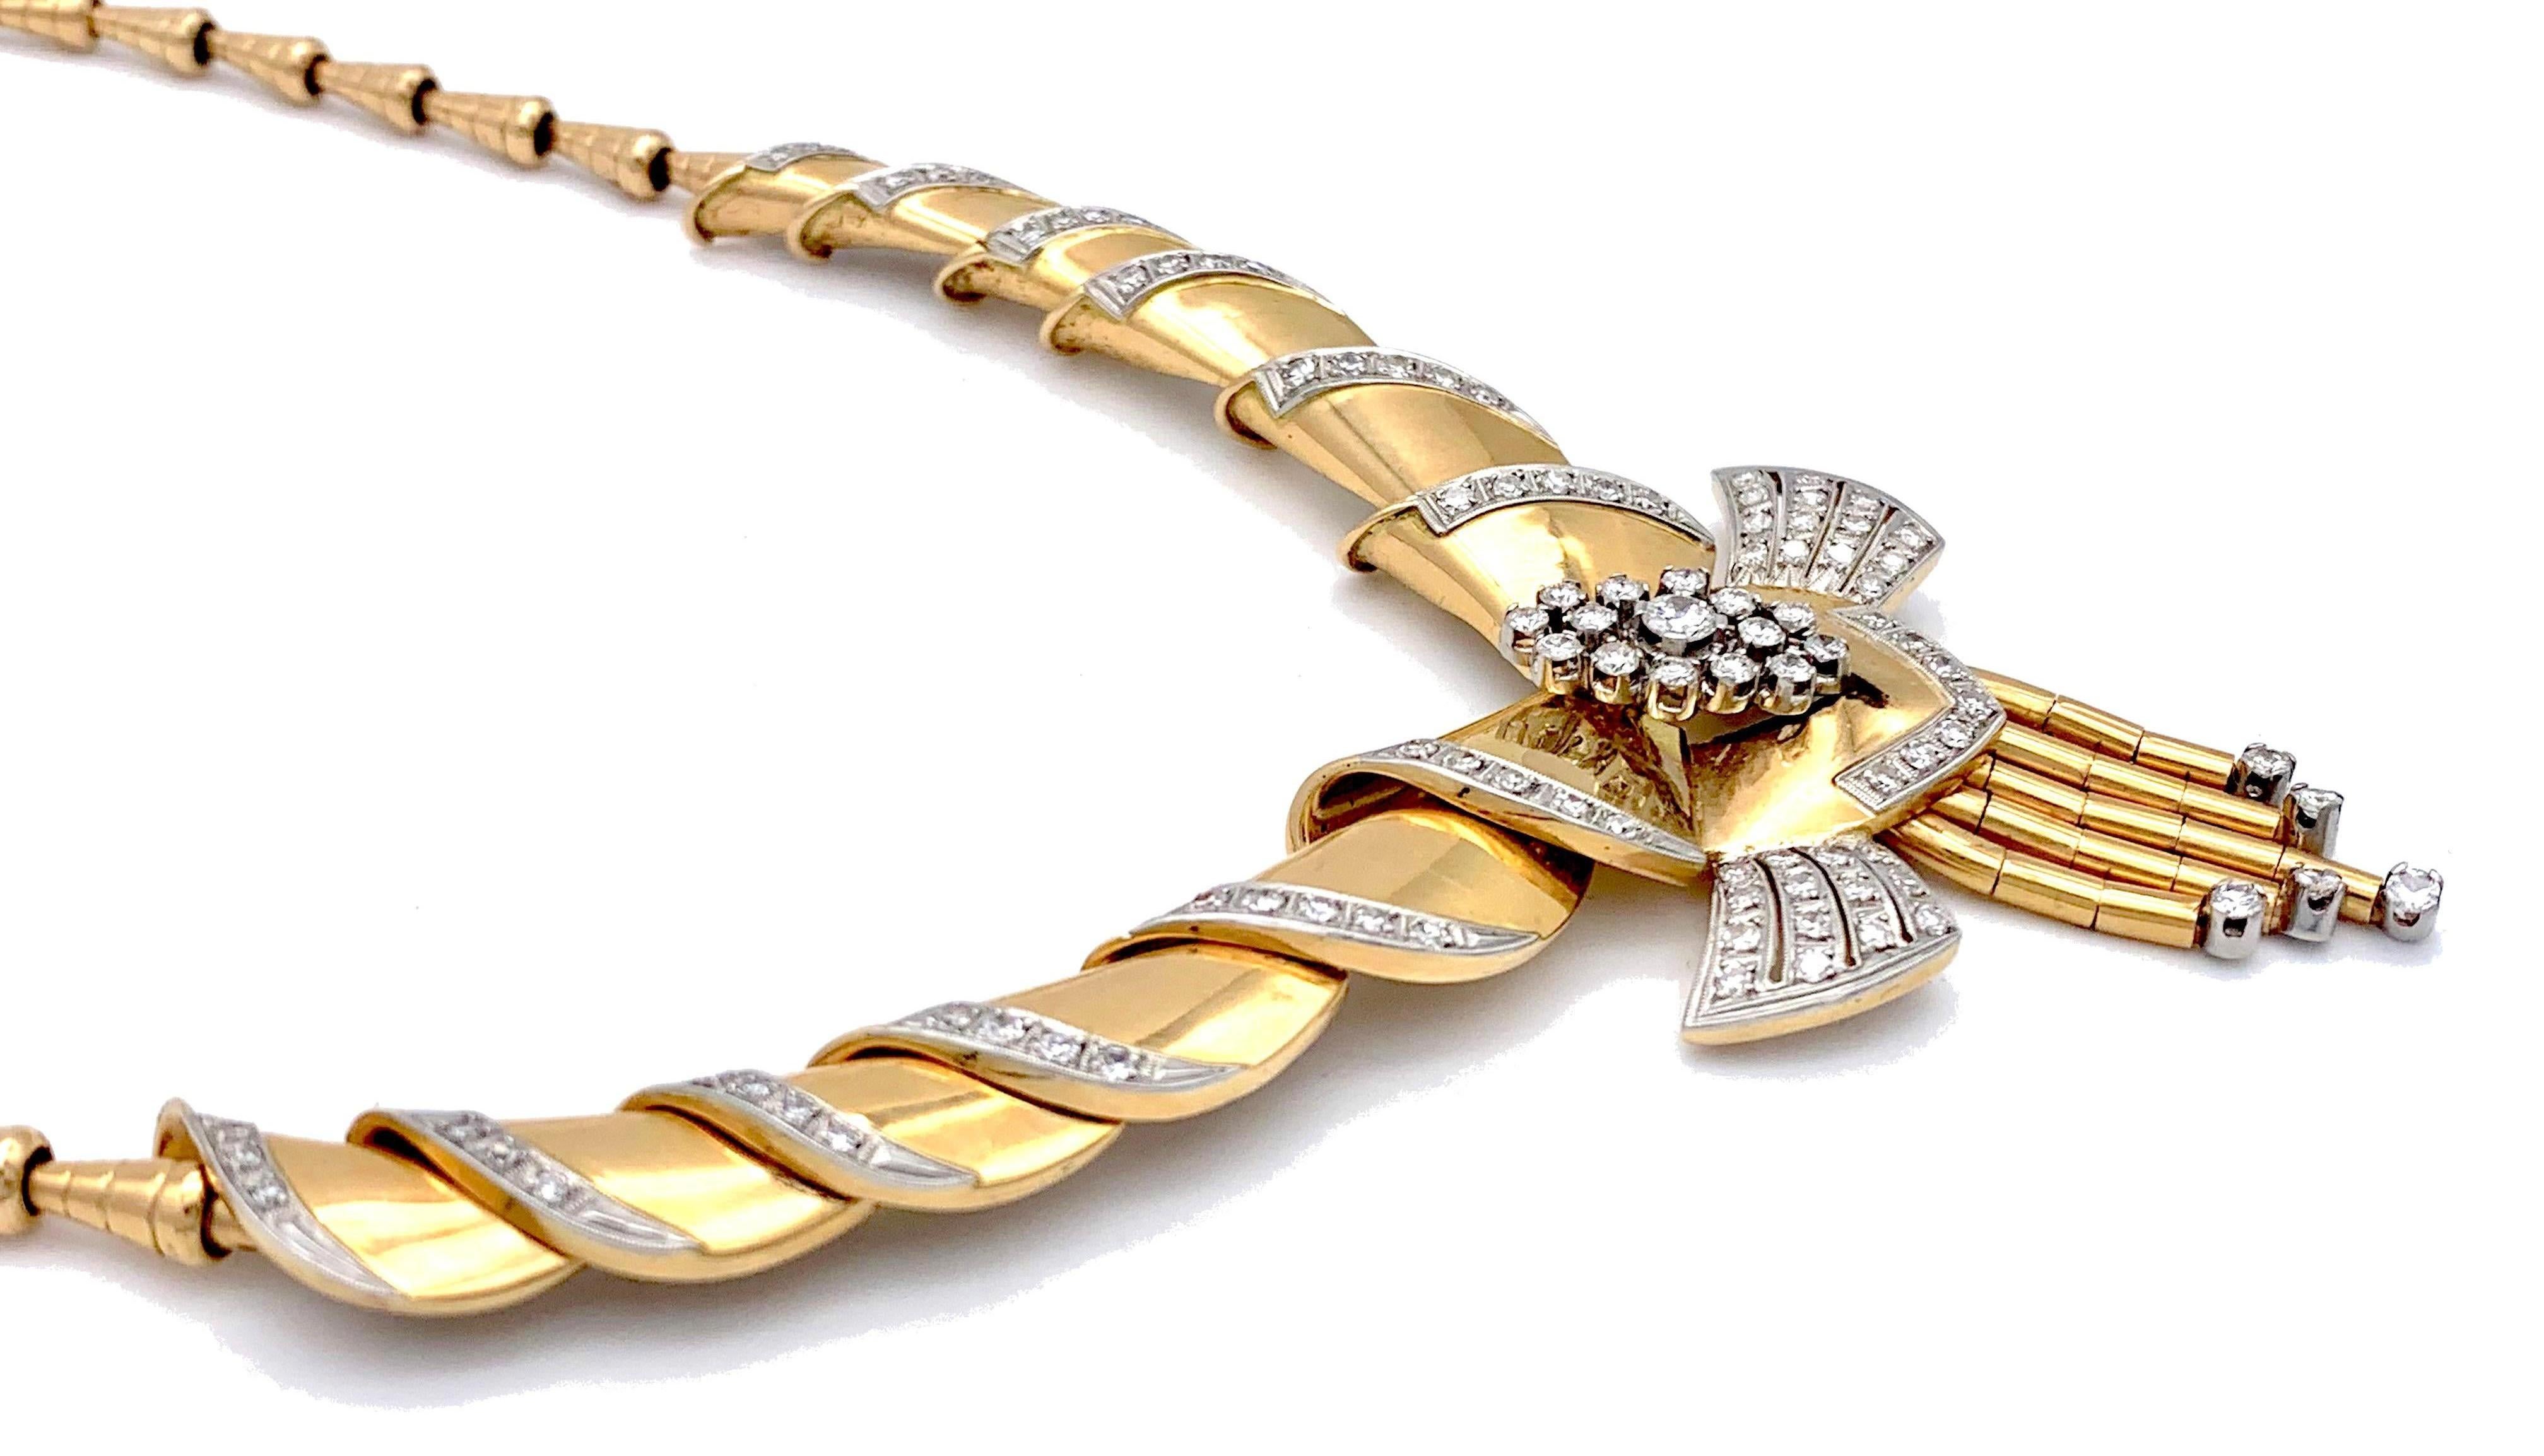 Diese atemberaubende Retro-Halskette wurde in den späten 1940er Jahren aus 18 Karat Gold gefertigt. Kegelförmige Elemente in verschiedenen Größen wurden zu diesem fabelhaften Schmuckstück zusammengefügt. Die Vorderseite  der Halskette ist als eine